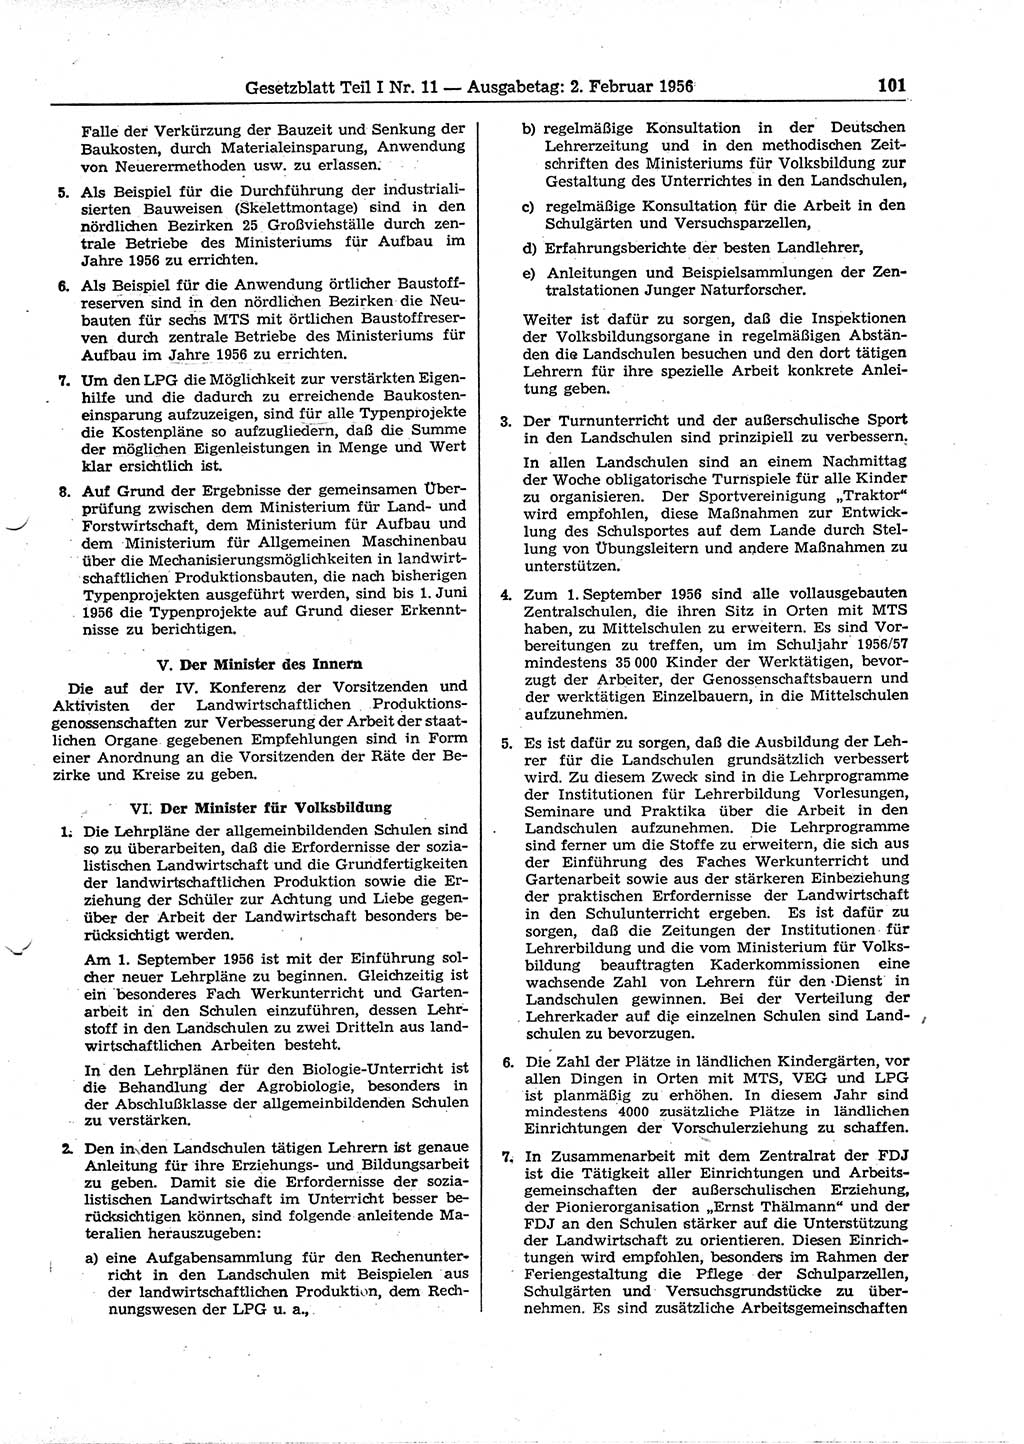 Gesetzblatt (GBl.) der Deutschen Demokratischen Republik (DDR) Teil Ⅰ 1956, Seite 101 (GBl. DDR Ⅰ 1956, S. 101)